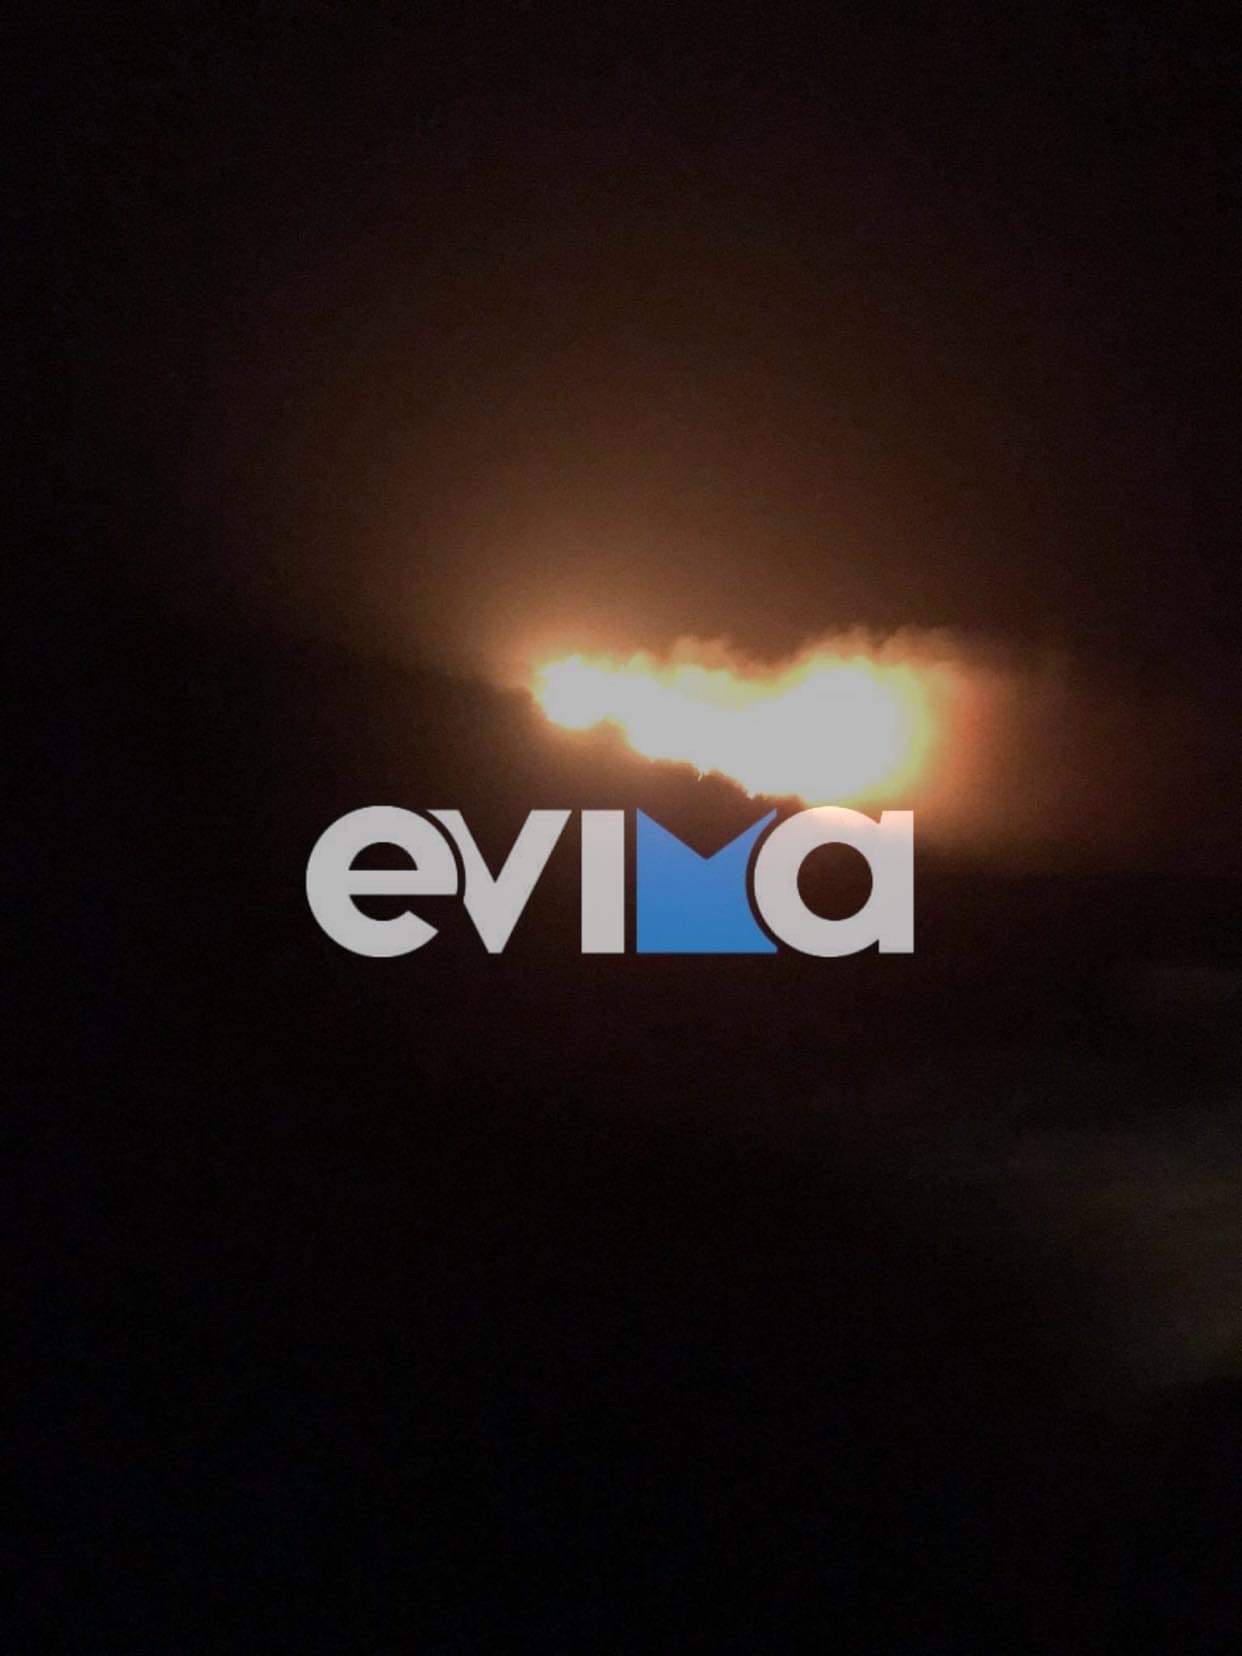 Νότια Εύβοια: Φωτιά από κεραυνό στα Μεσοχώρια του Δήμου Καρύστου [εικόνες&βίντεο]